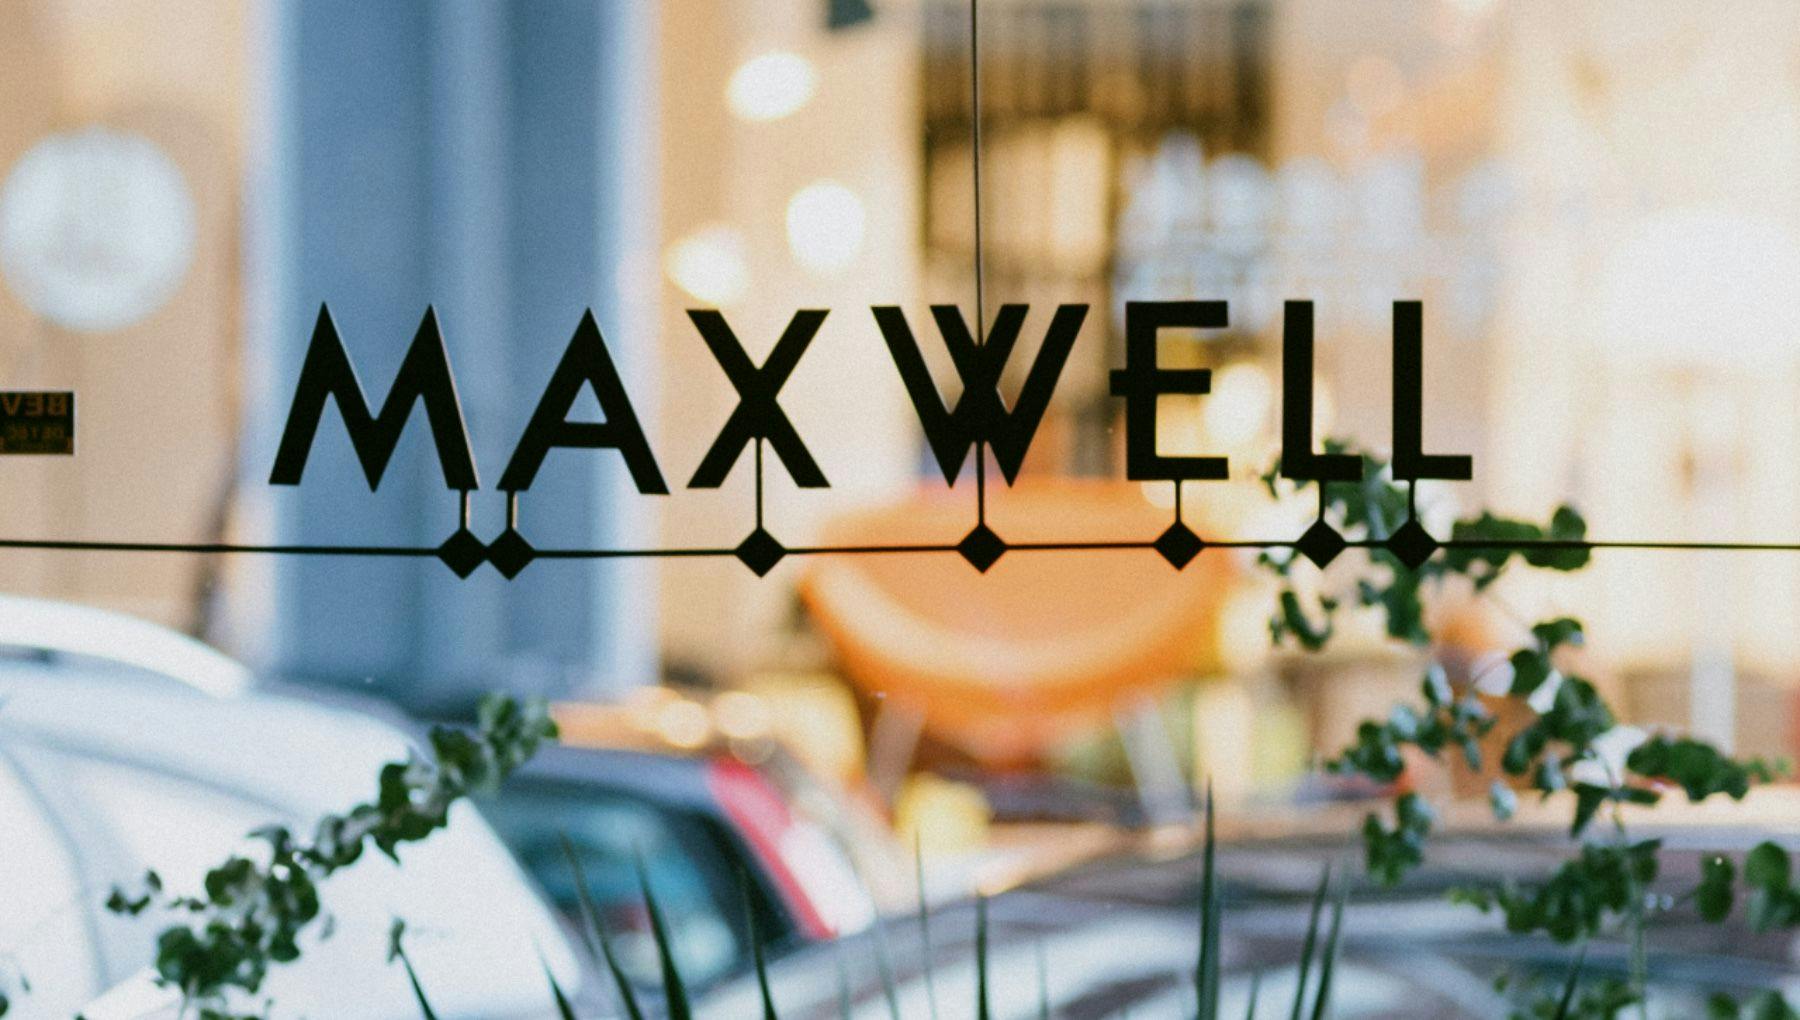 Café Maxwell exterior logo